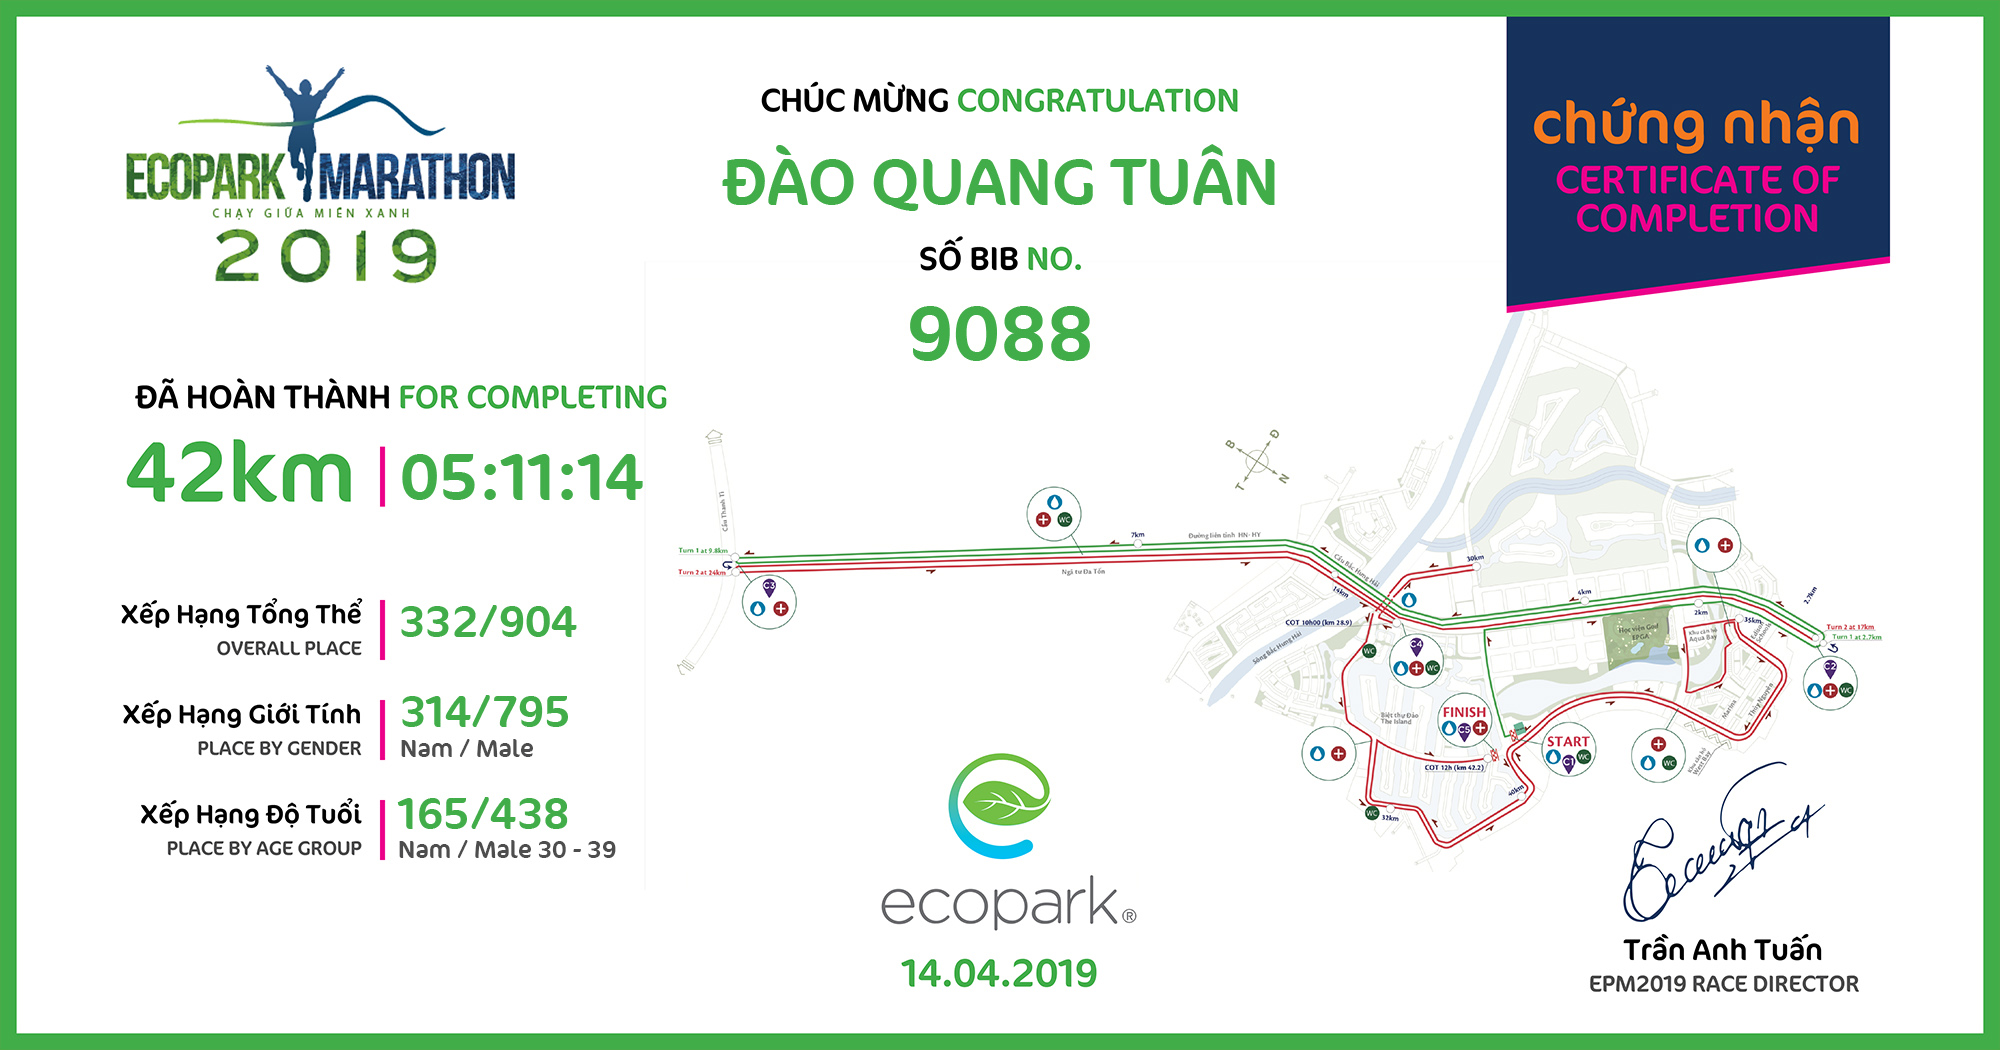 9088 - Đào Quang Tuân